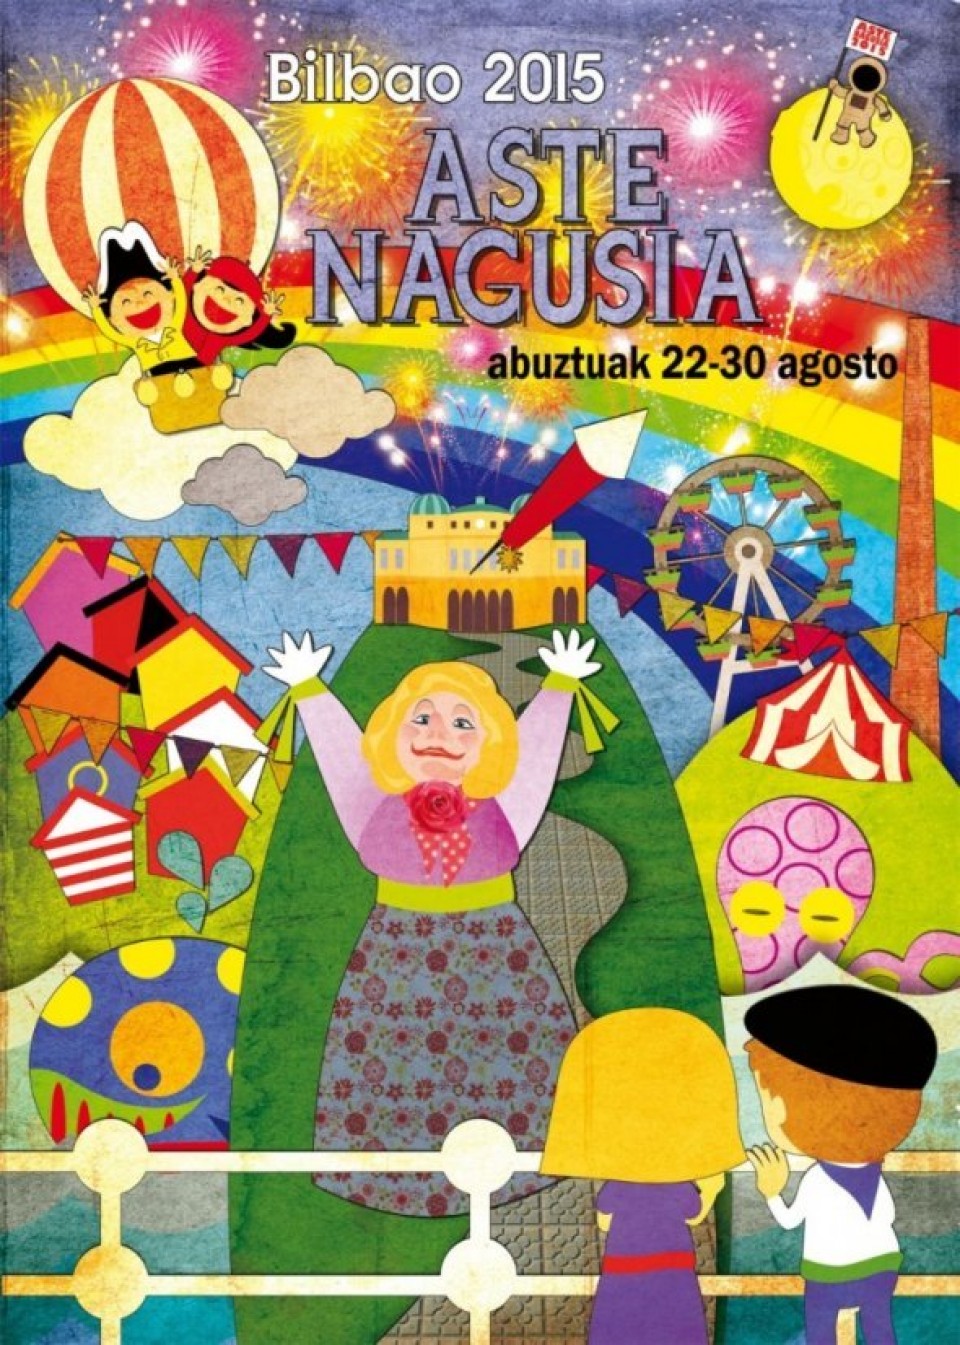 Cartel de Aste Nagusia. Joseba Salinas es su autor. Foto: http://www.blogseitb.com/bilbao/.